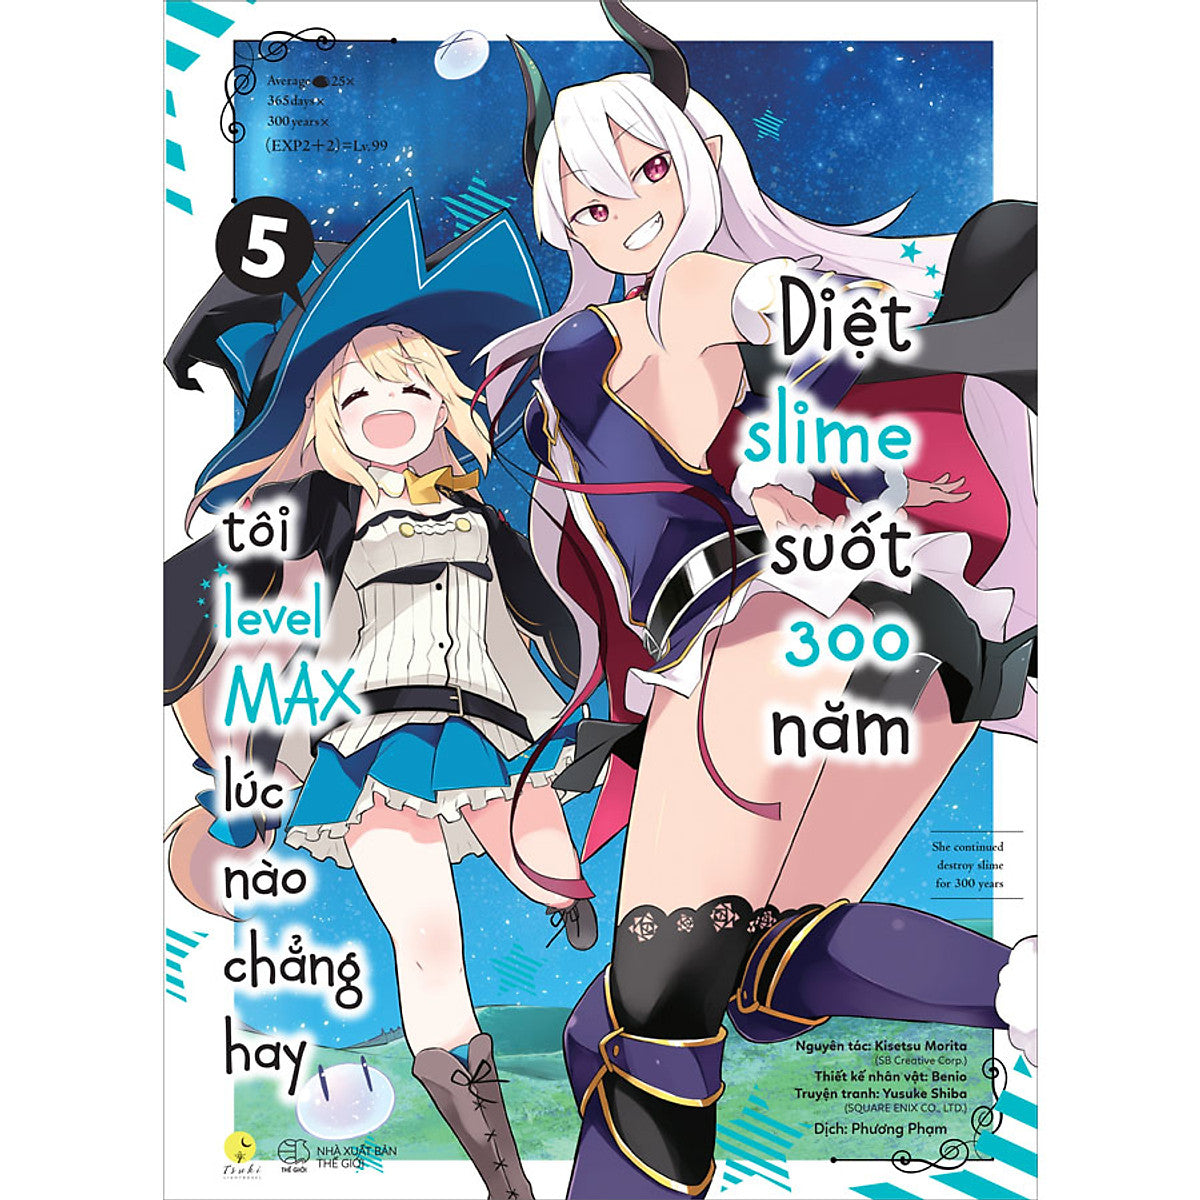 Manga Diệt Slime Suốt 300 Năm, Tôi Levelmax Lúc Nào Chẳng Hay - Tập 5